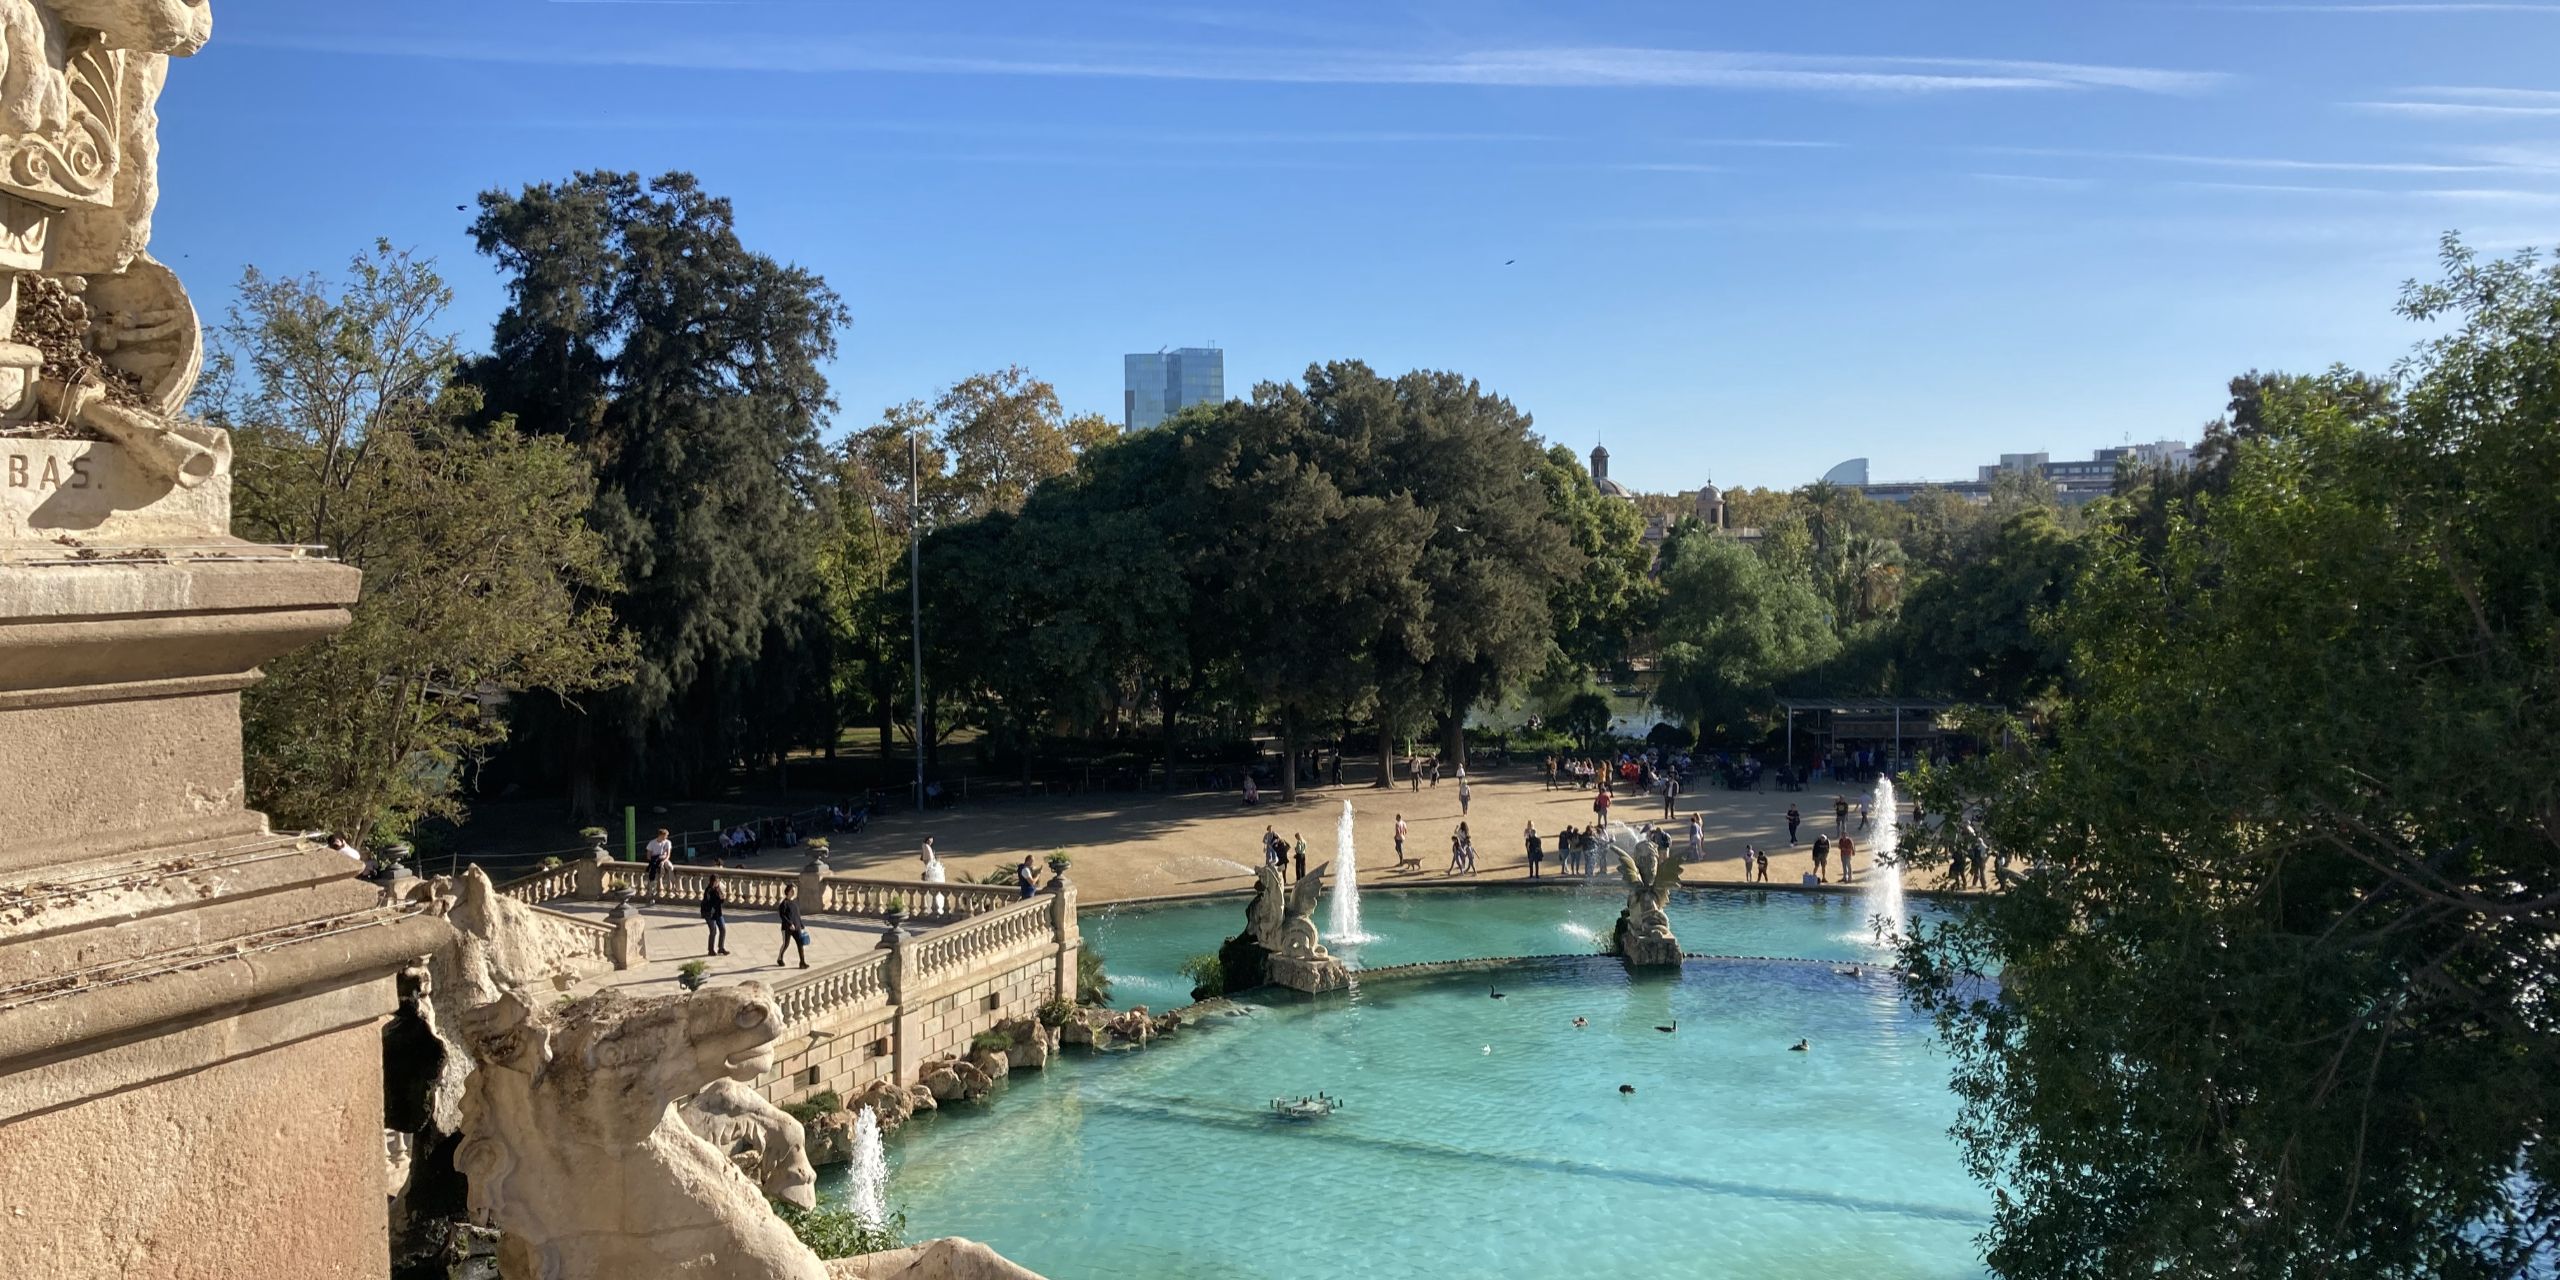 Barcelona park with fountain